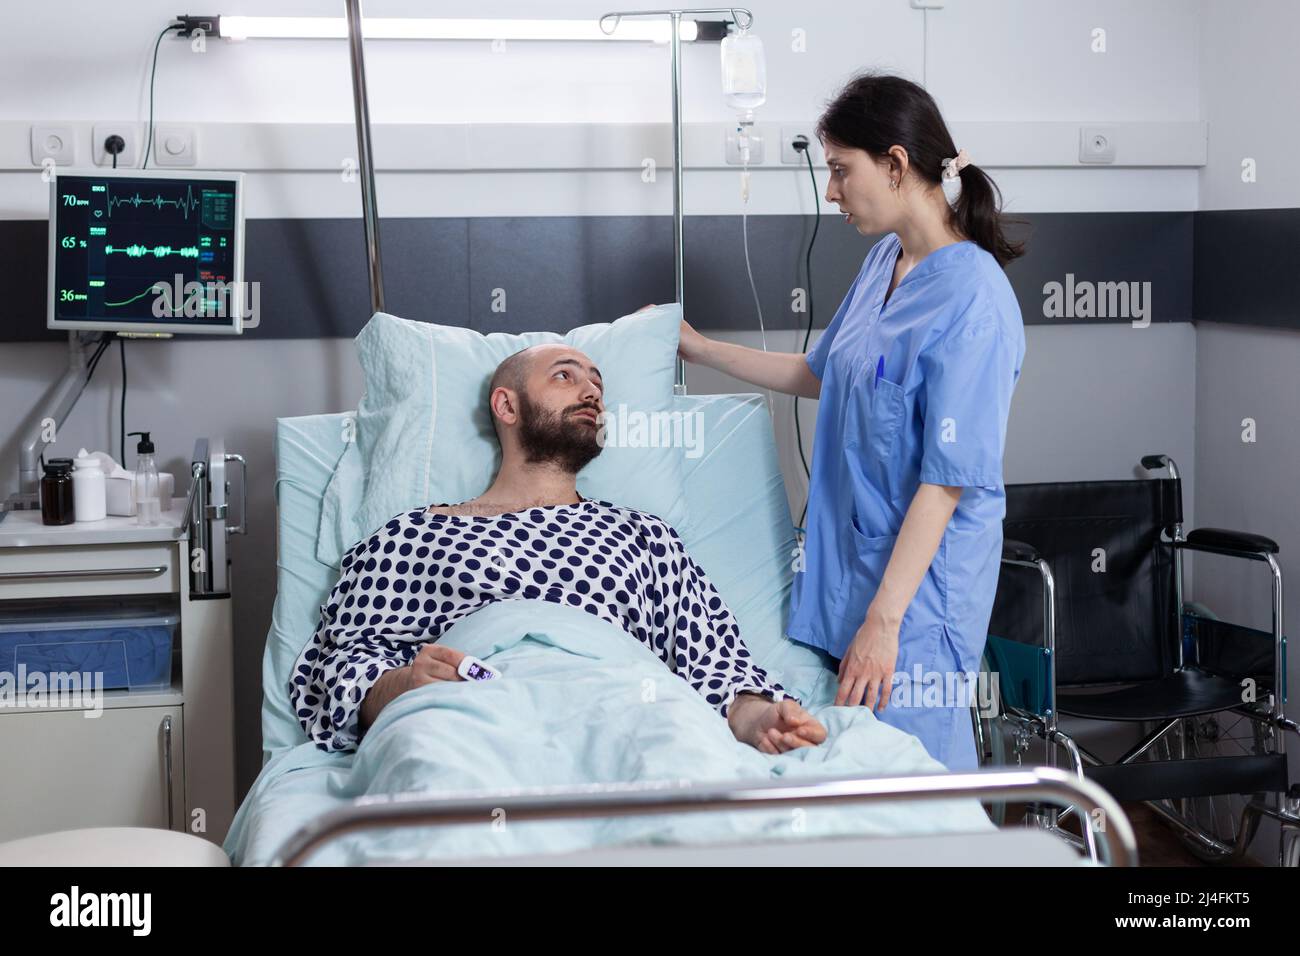 Paciente con insuficiencia respiratoria que pide al cuidador que coloque la almohada mientras está conectado al monitor de signos vitales que muestra una saturación de oxígeno baja. Enfermera cuidando al hombre con problemas respiratorios. Foto de stock